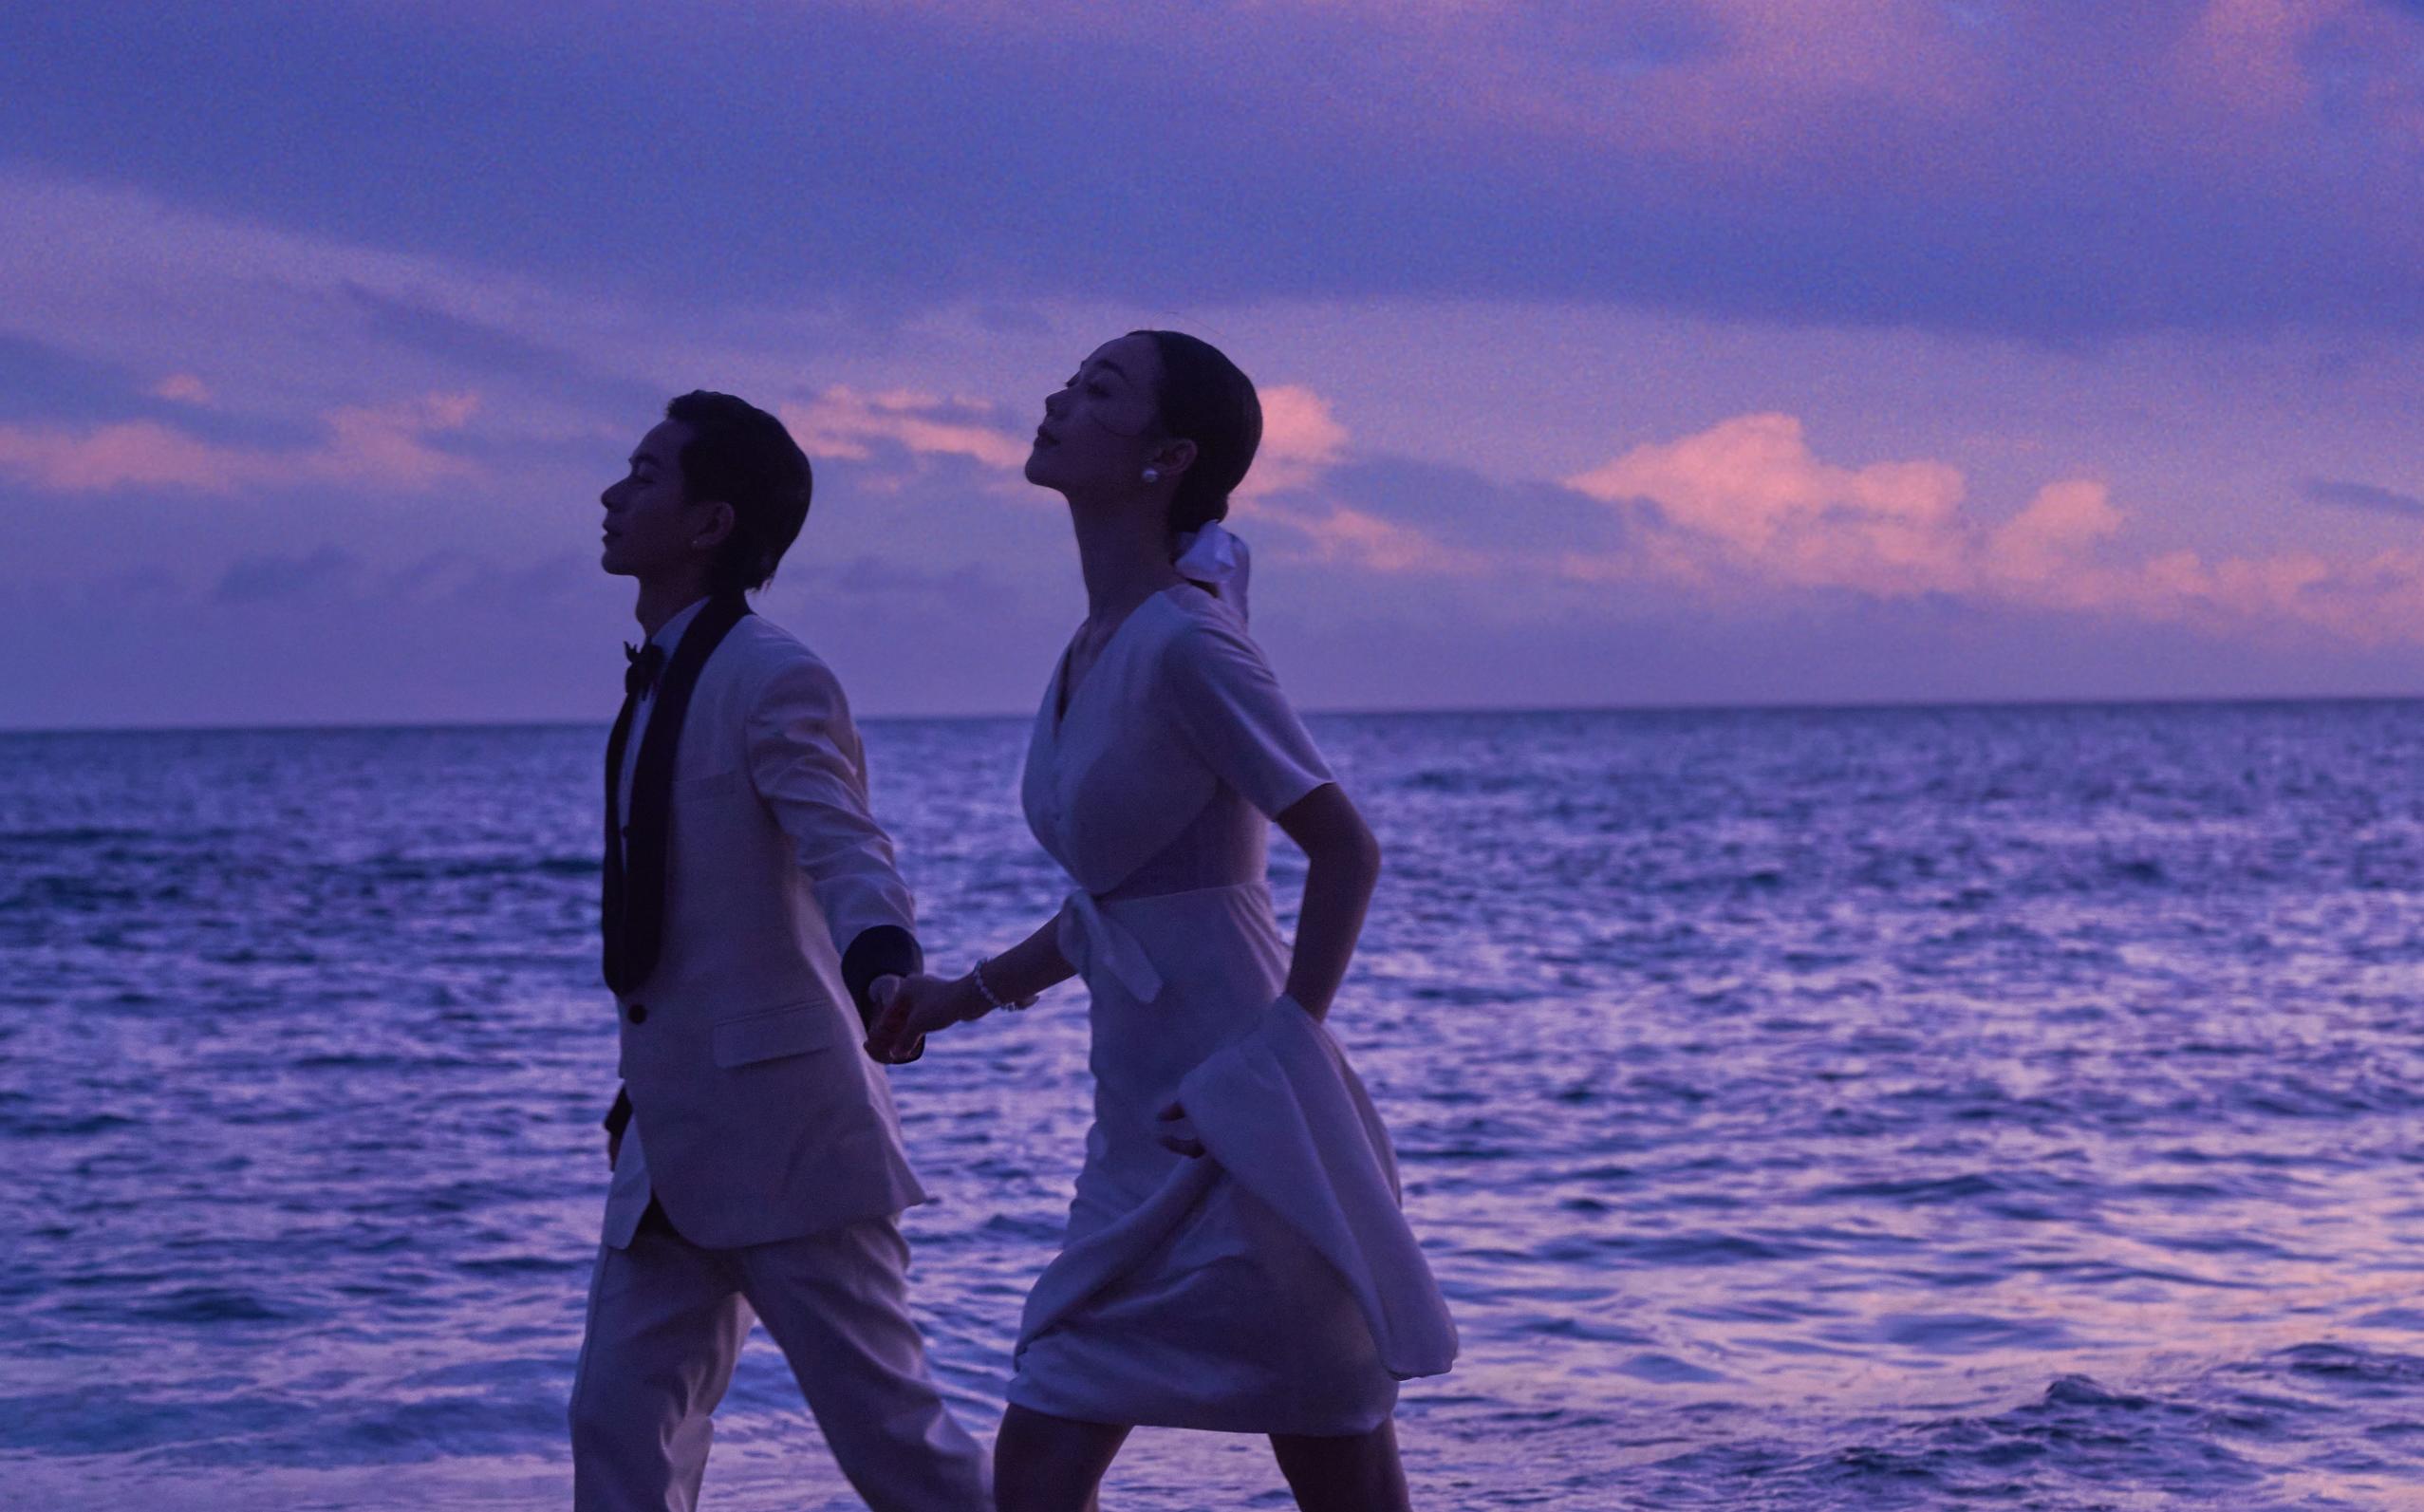 电影氛围拉满的海景婚纱照太绝了吧❗超浪漫